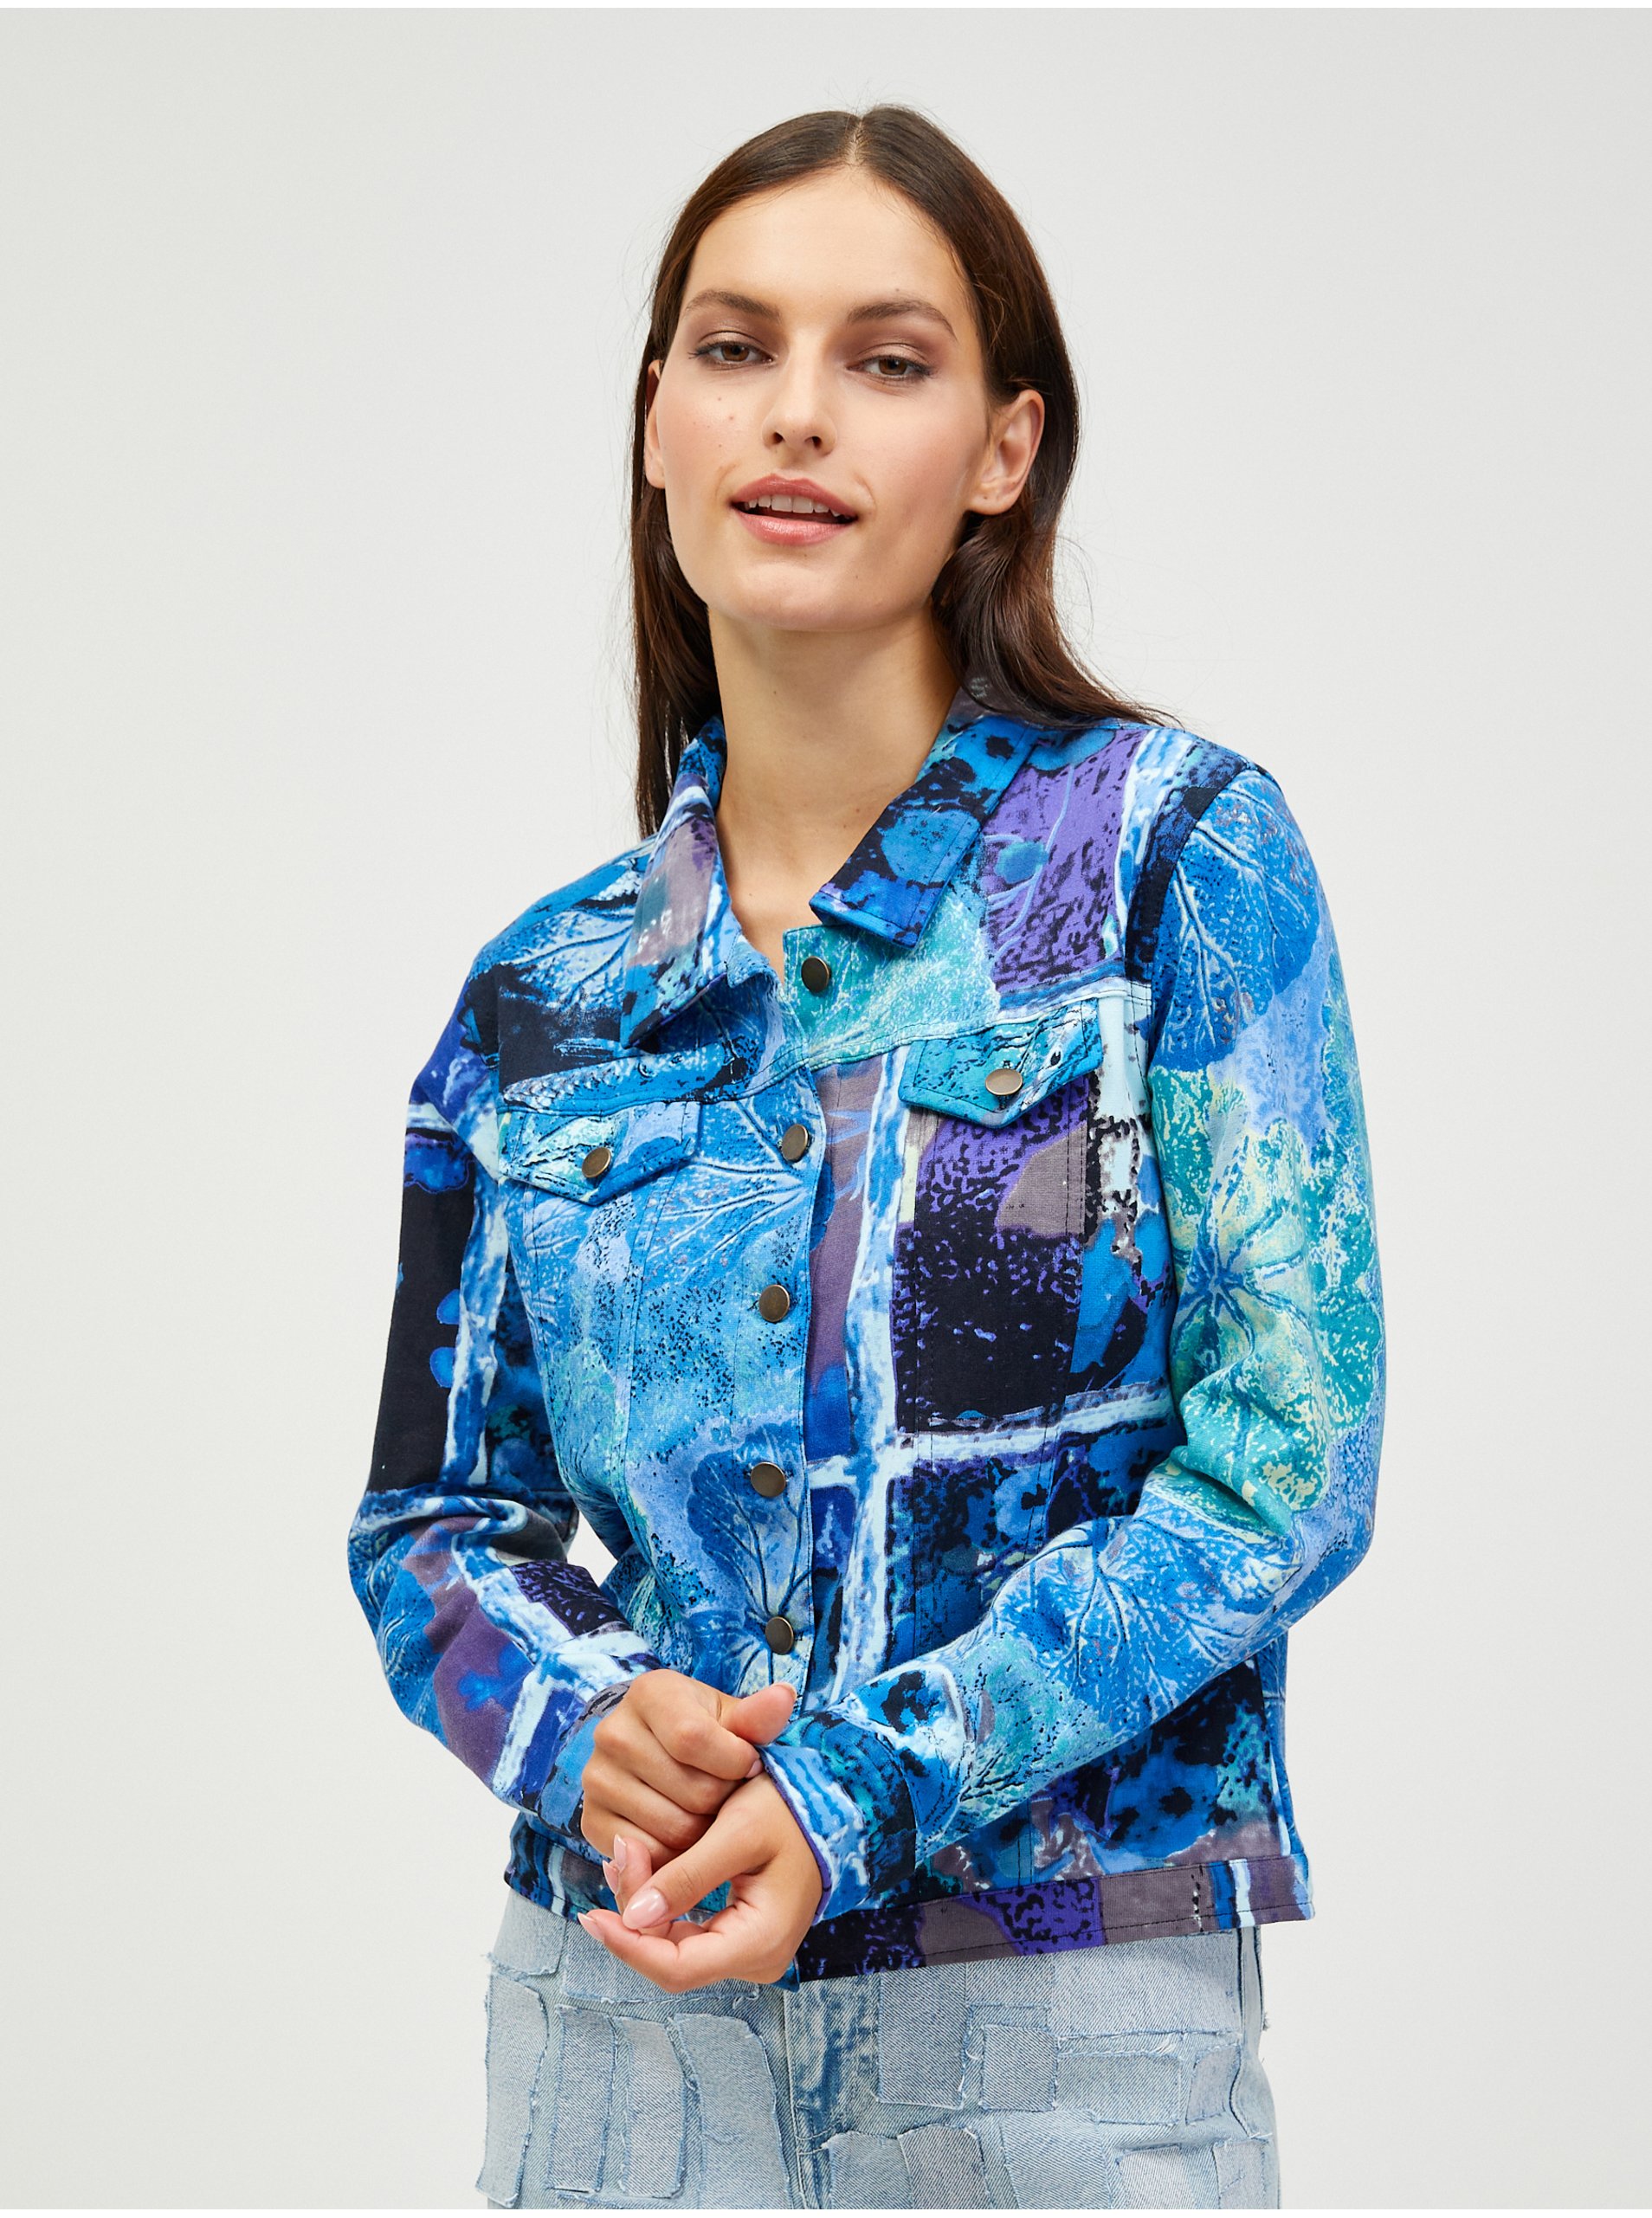 Lacno Modrá dámska vzorovaná rifľová bunda Orientique Jacket